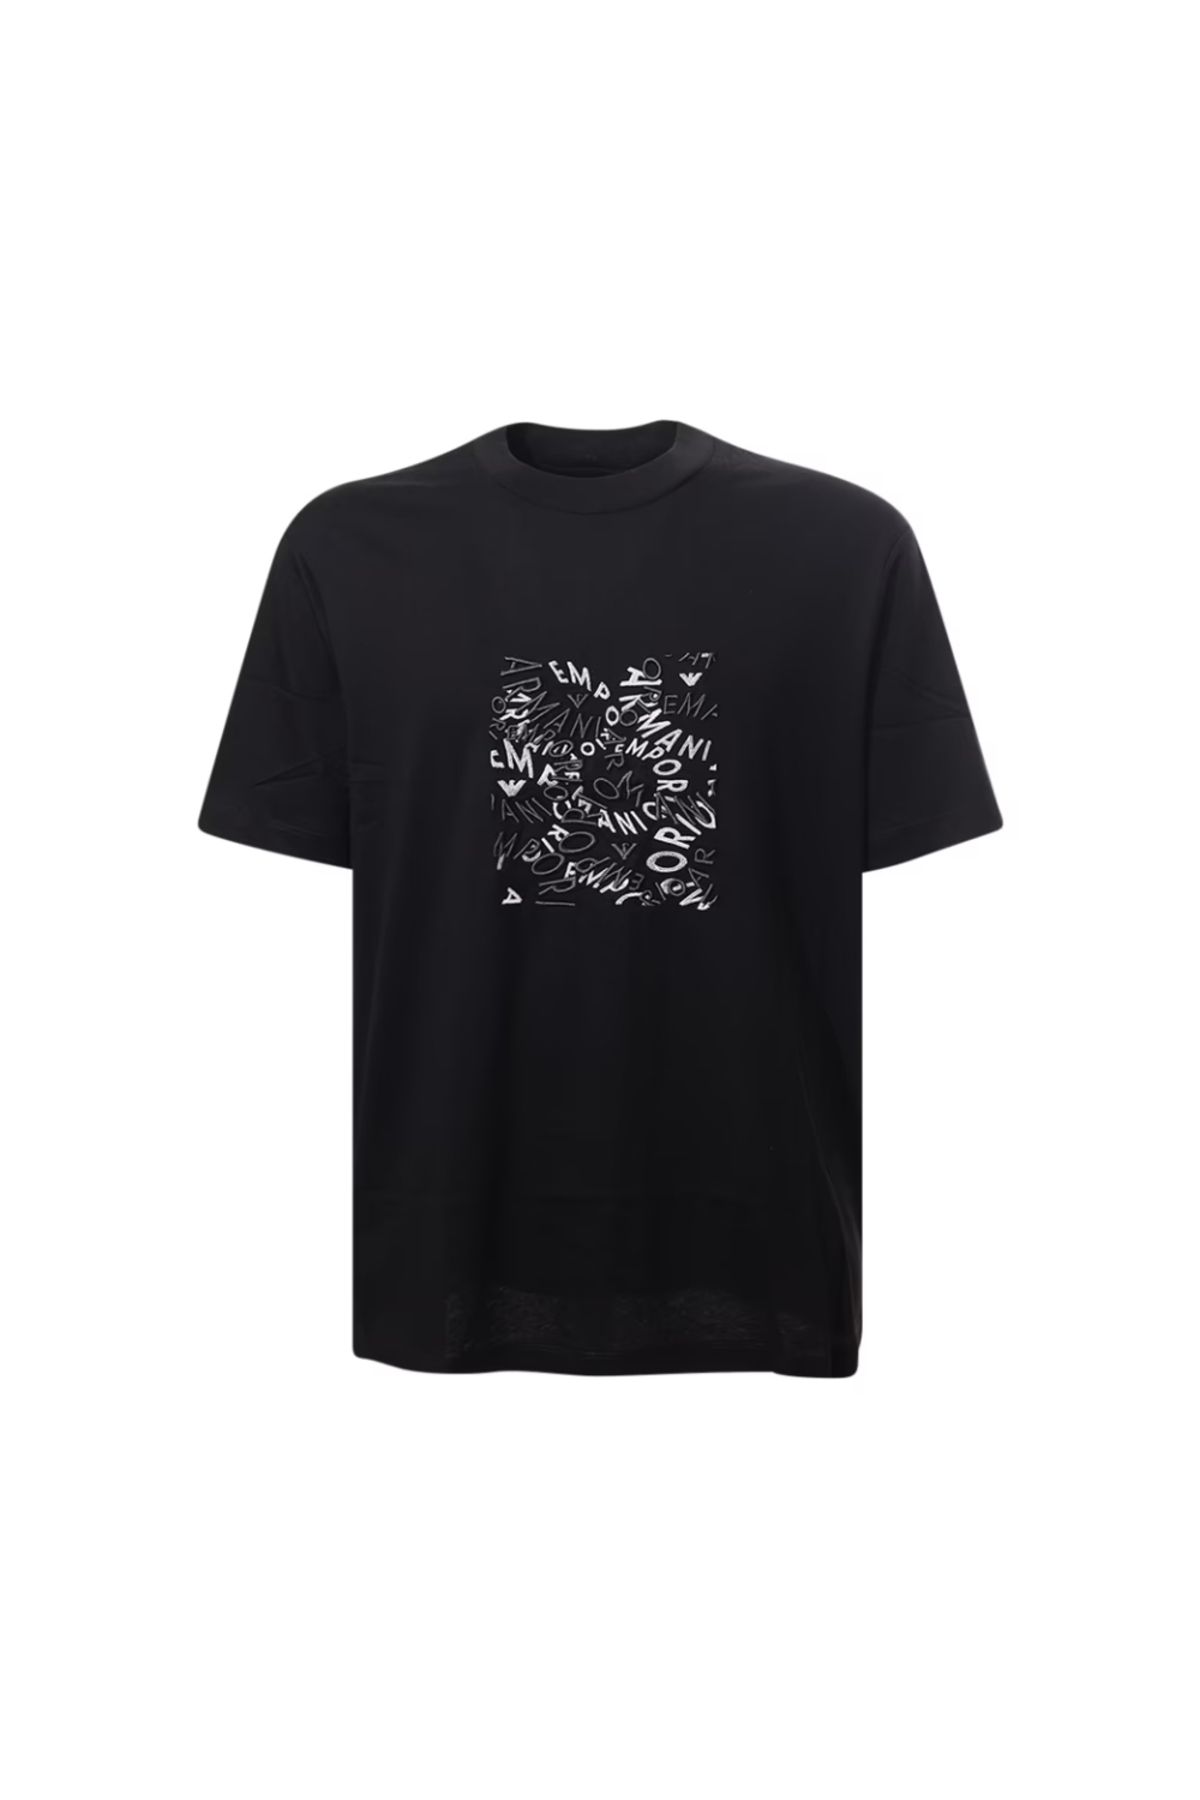 Emporio Armani Erkek Pamuklu Kısa Boy Rahat Kesim Günlük Siyah T-Shirt 3D1TG3 1JPZZ-0056